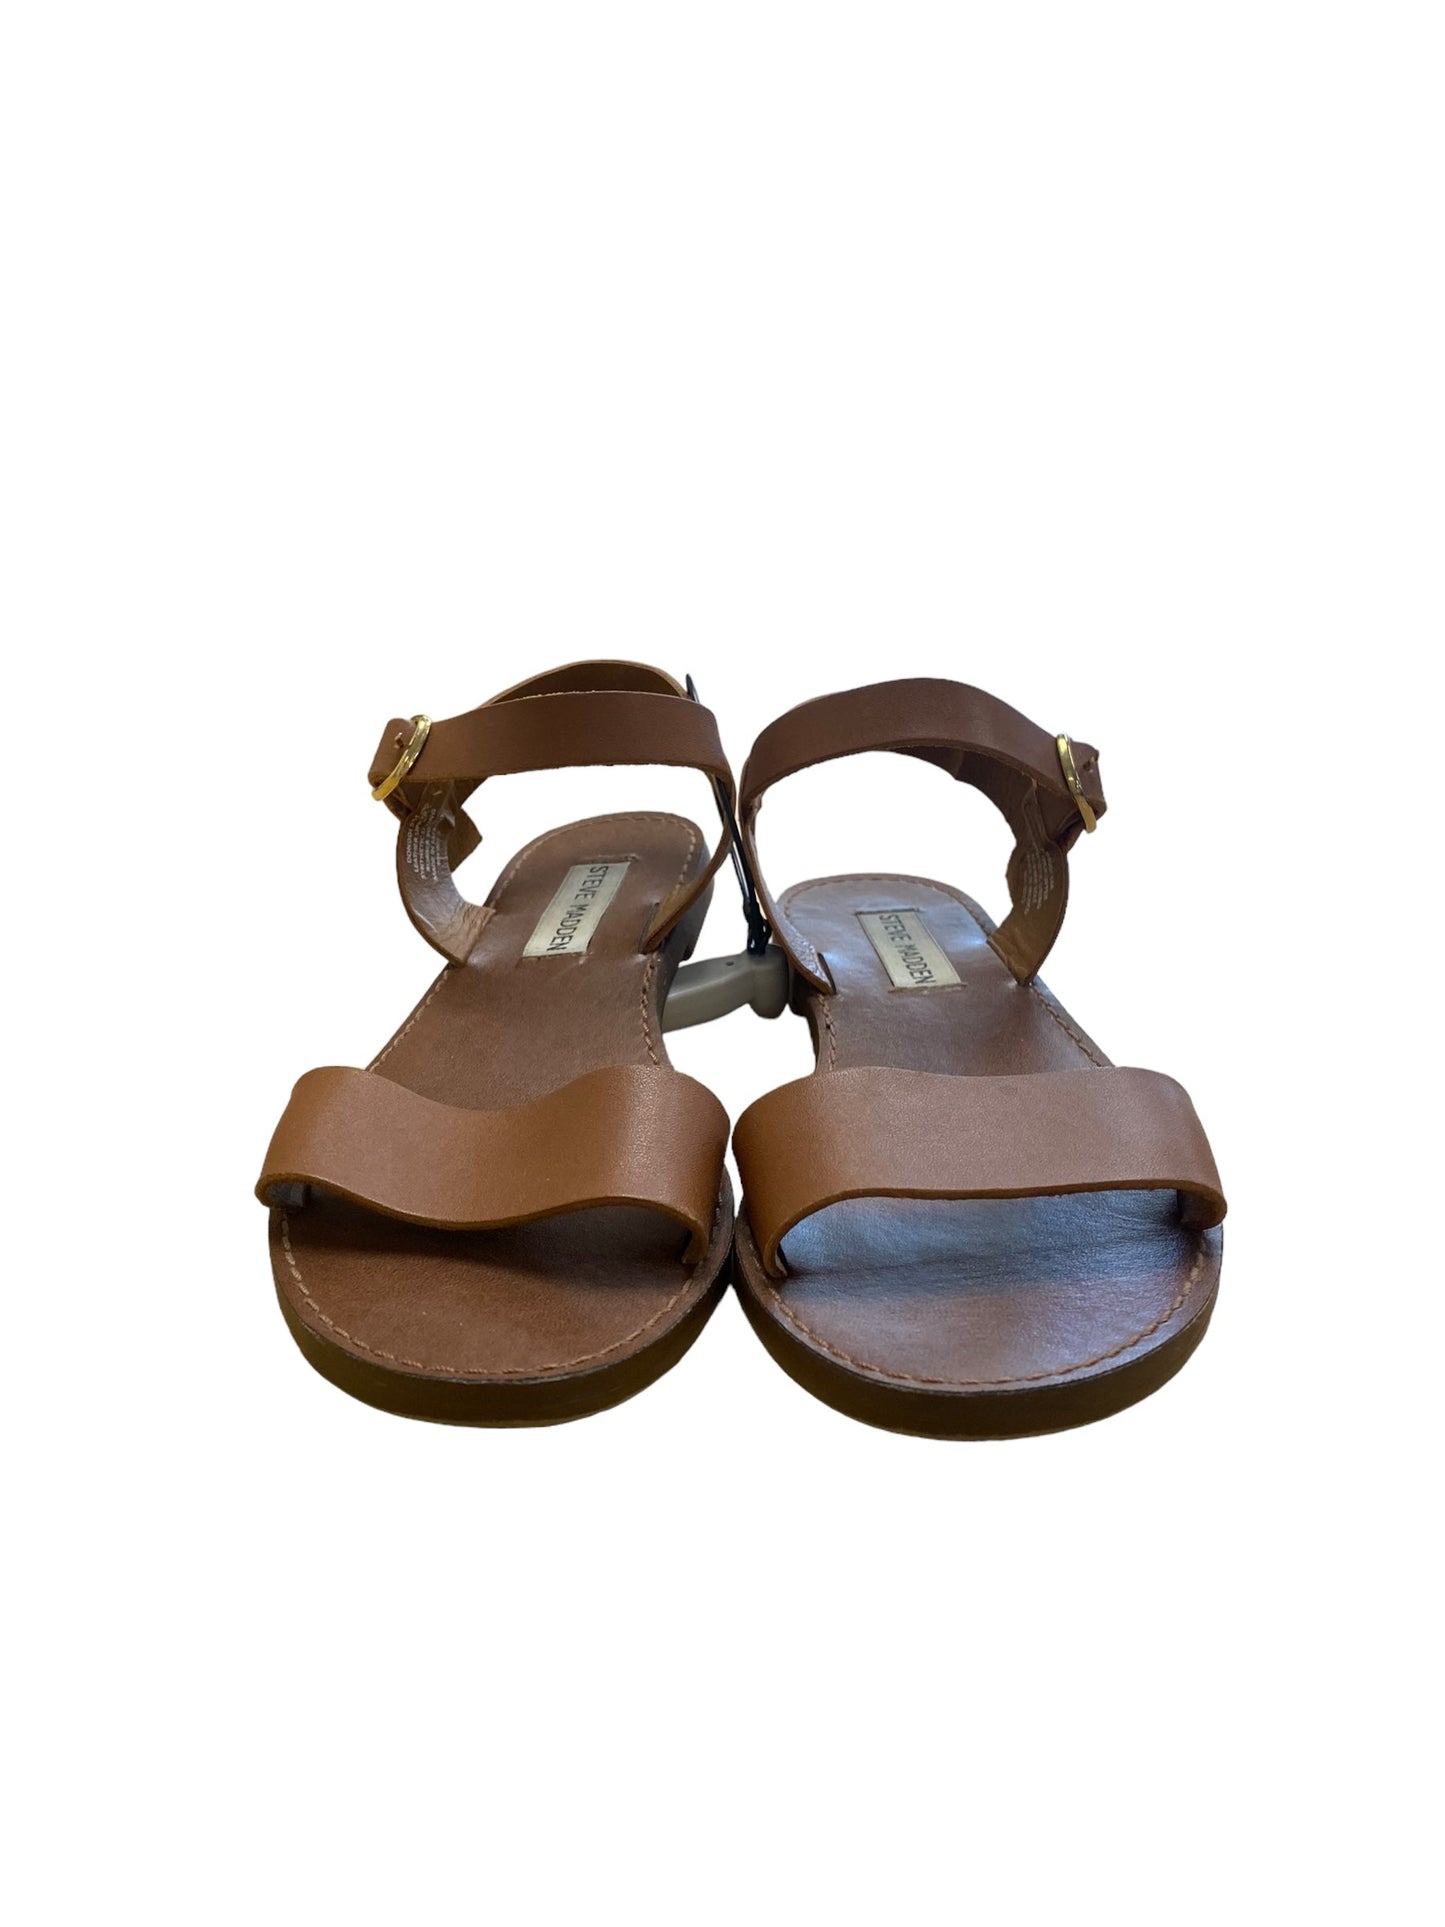 Brown Sandals Flats Steve Madden, Size 5